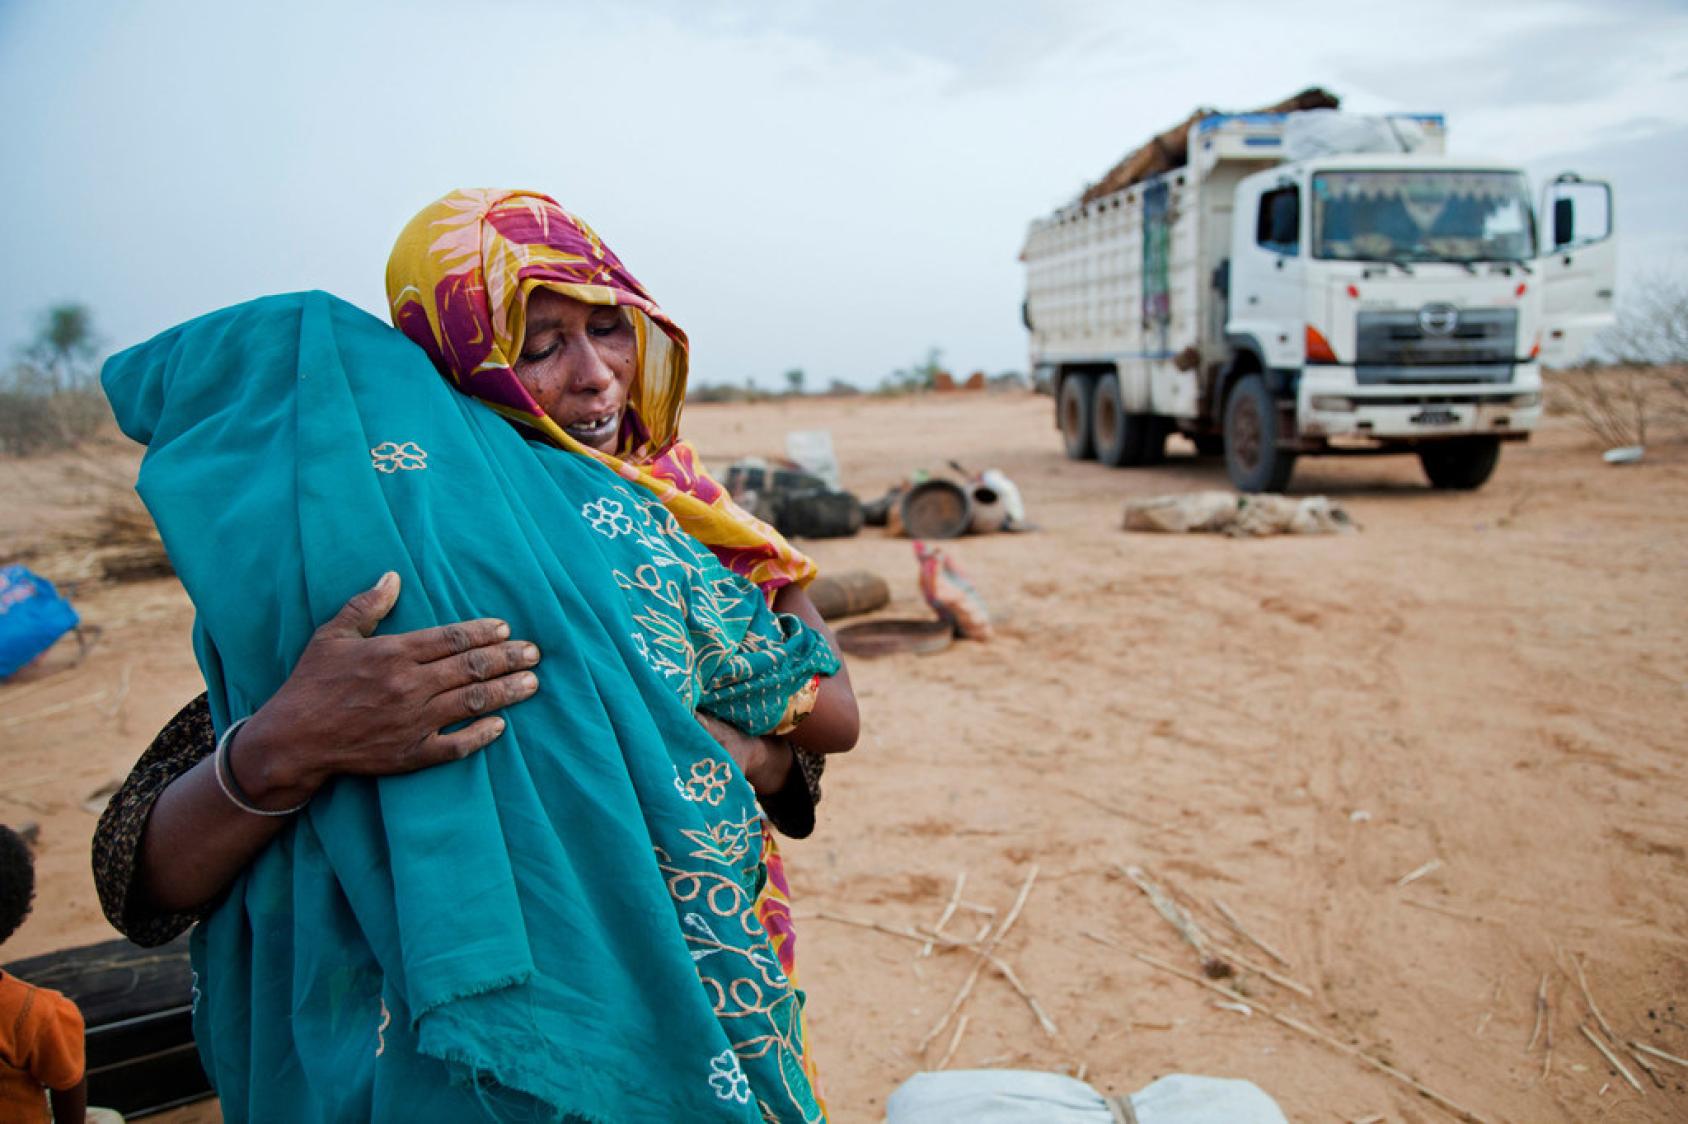 غرق شعب السودان في حرب تدمر حياتهم ووطنهم، وتنتهك حقوقهم الإنسانية الأساسية.